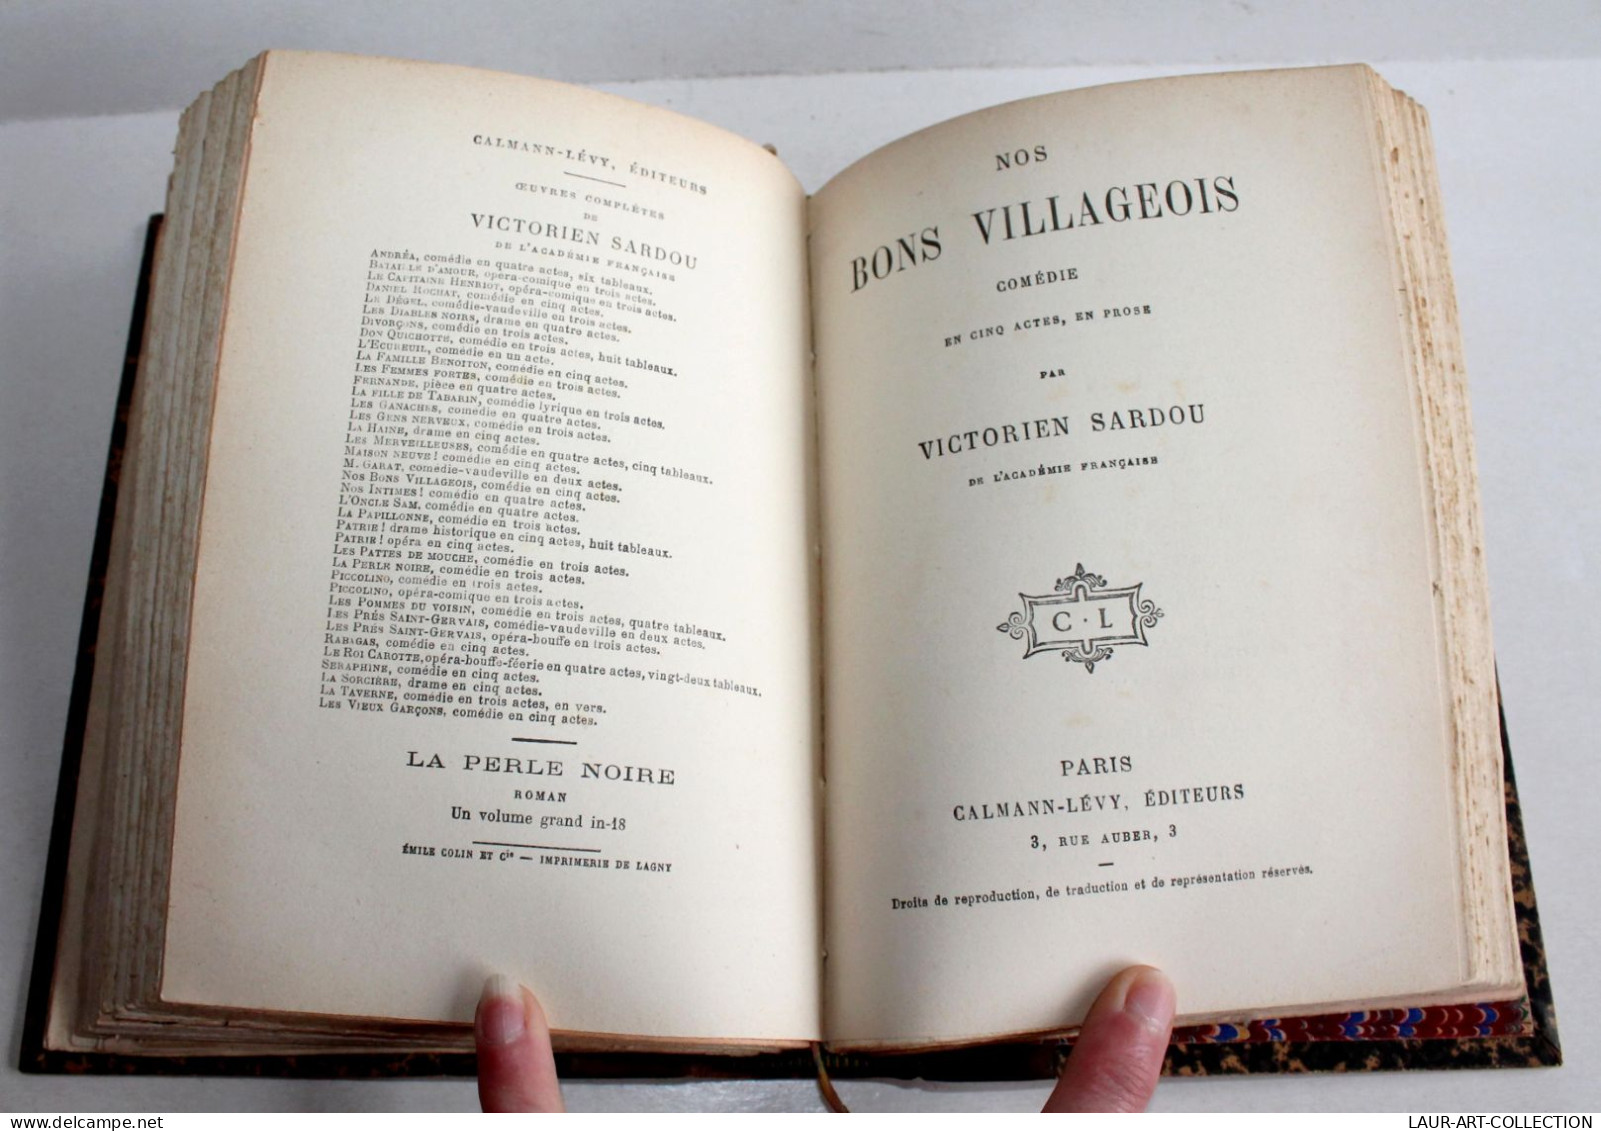 RARE! VICTORIEN SARDOU De CLARETIE + NOS BONS VILLAGEOIS COMEDIE 1883 THEATRE / ANCIEN LIVRE XIXe SIECLE (2603.42) - Franse Schrijvers